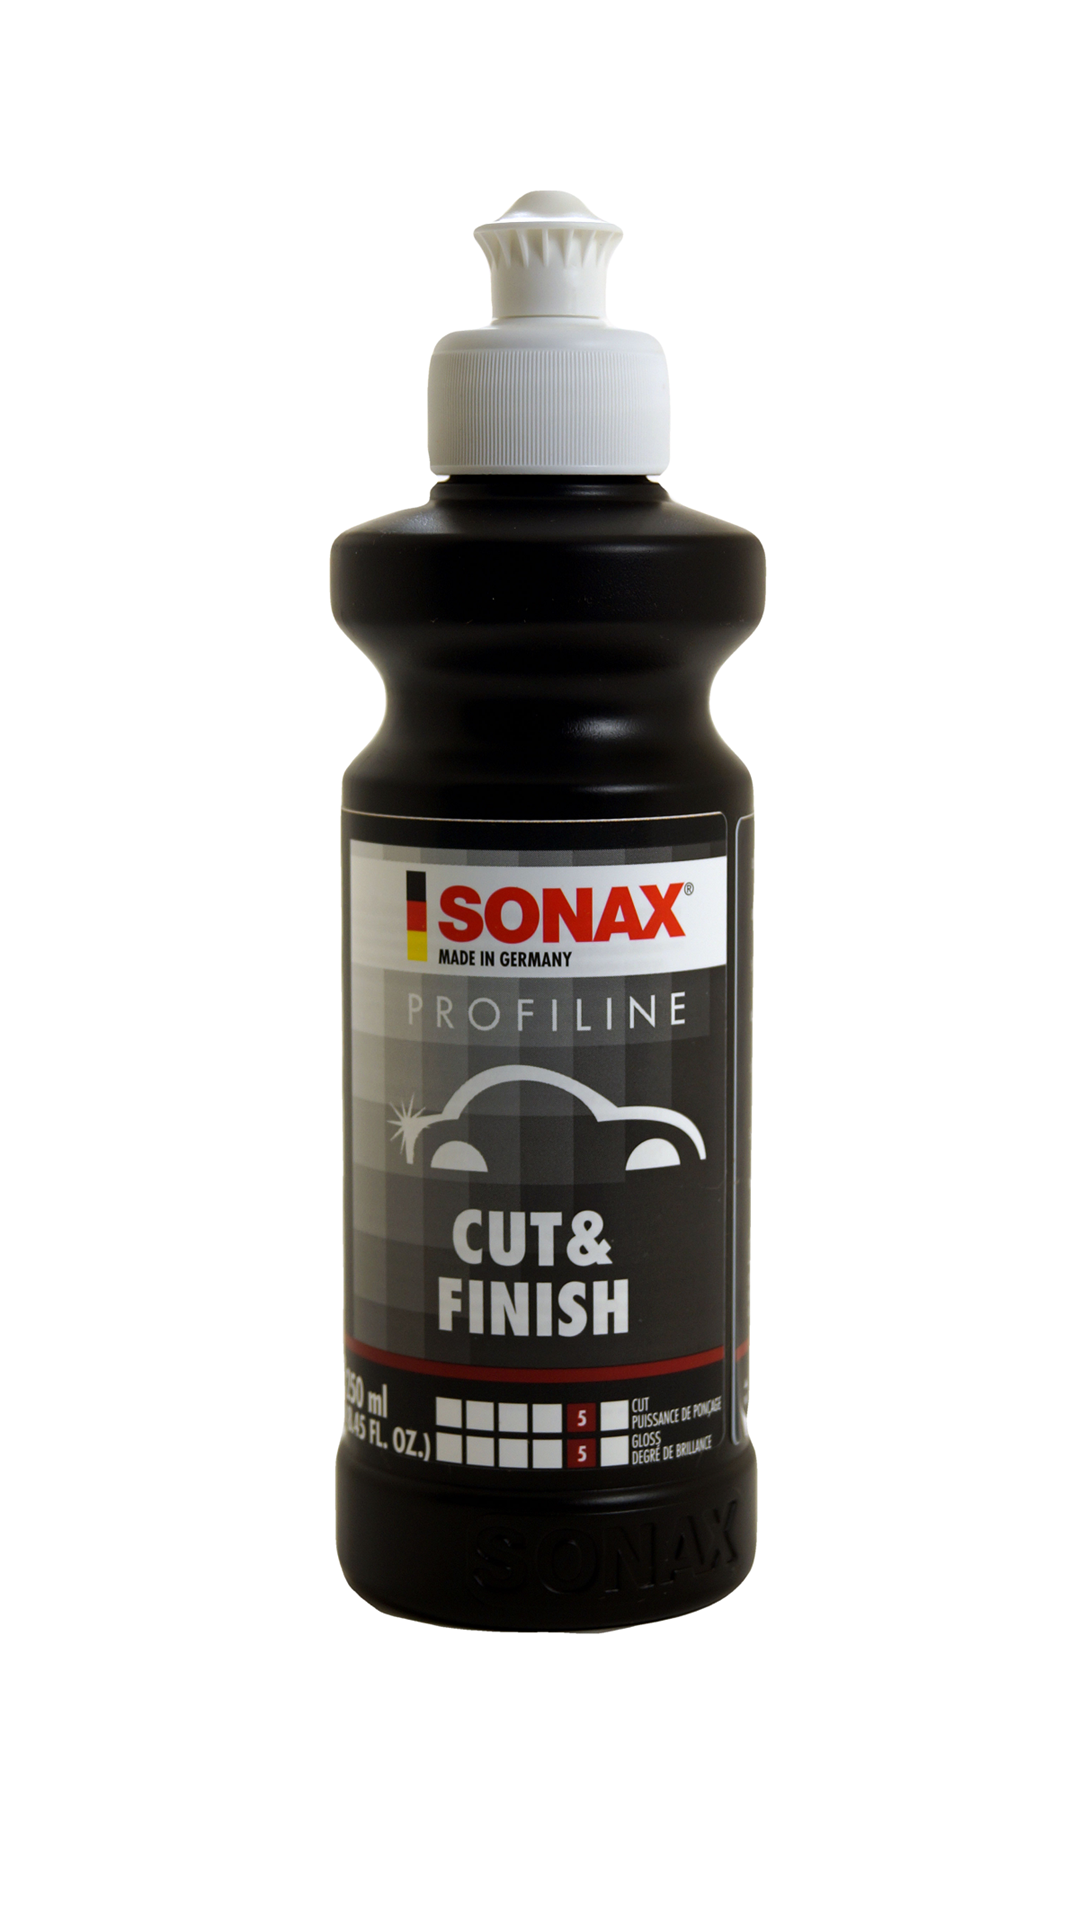 SONAX Perfect Finish 8.45 fl oz (250 ml)